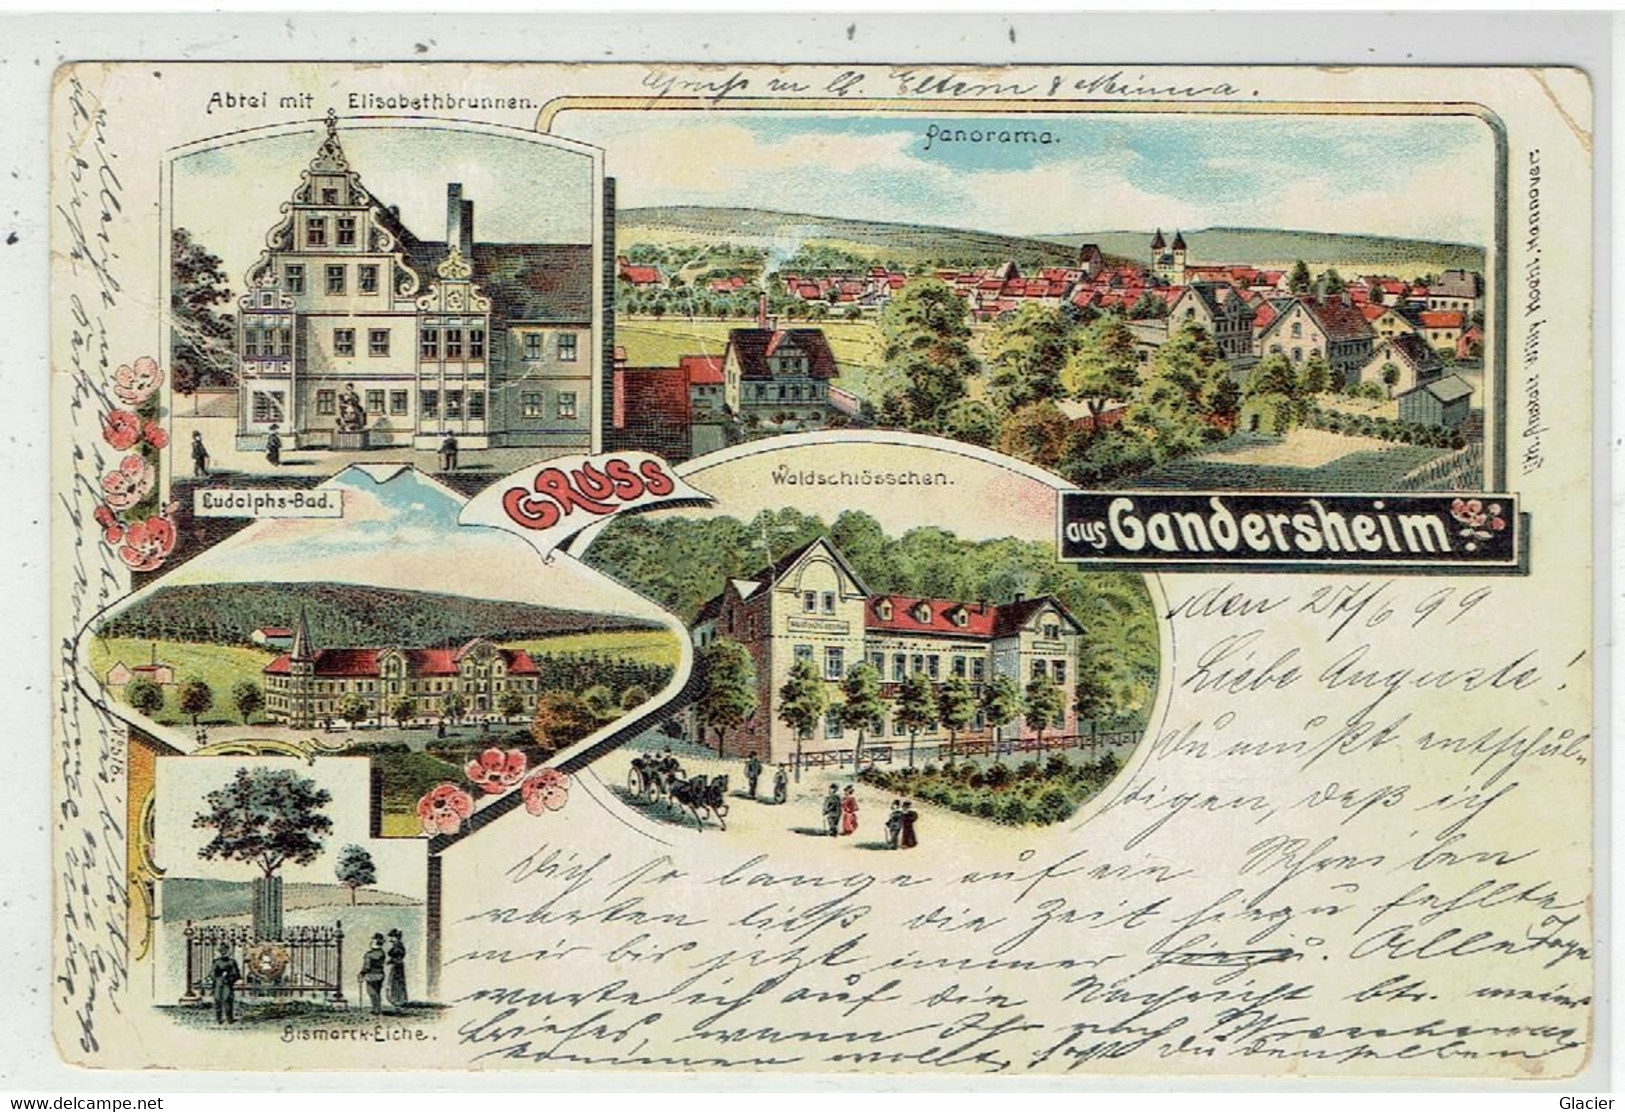 Gruss Aus Gandersheim 1899 - Panorama - Ludophs-Bad - Abtei Mit Elisabetbrunnen - Bismarck-Eiche - Northeim